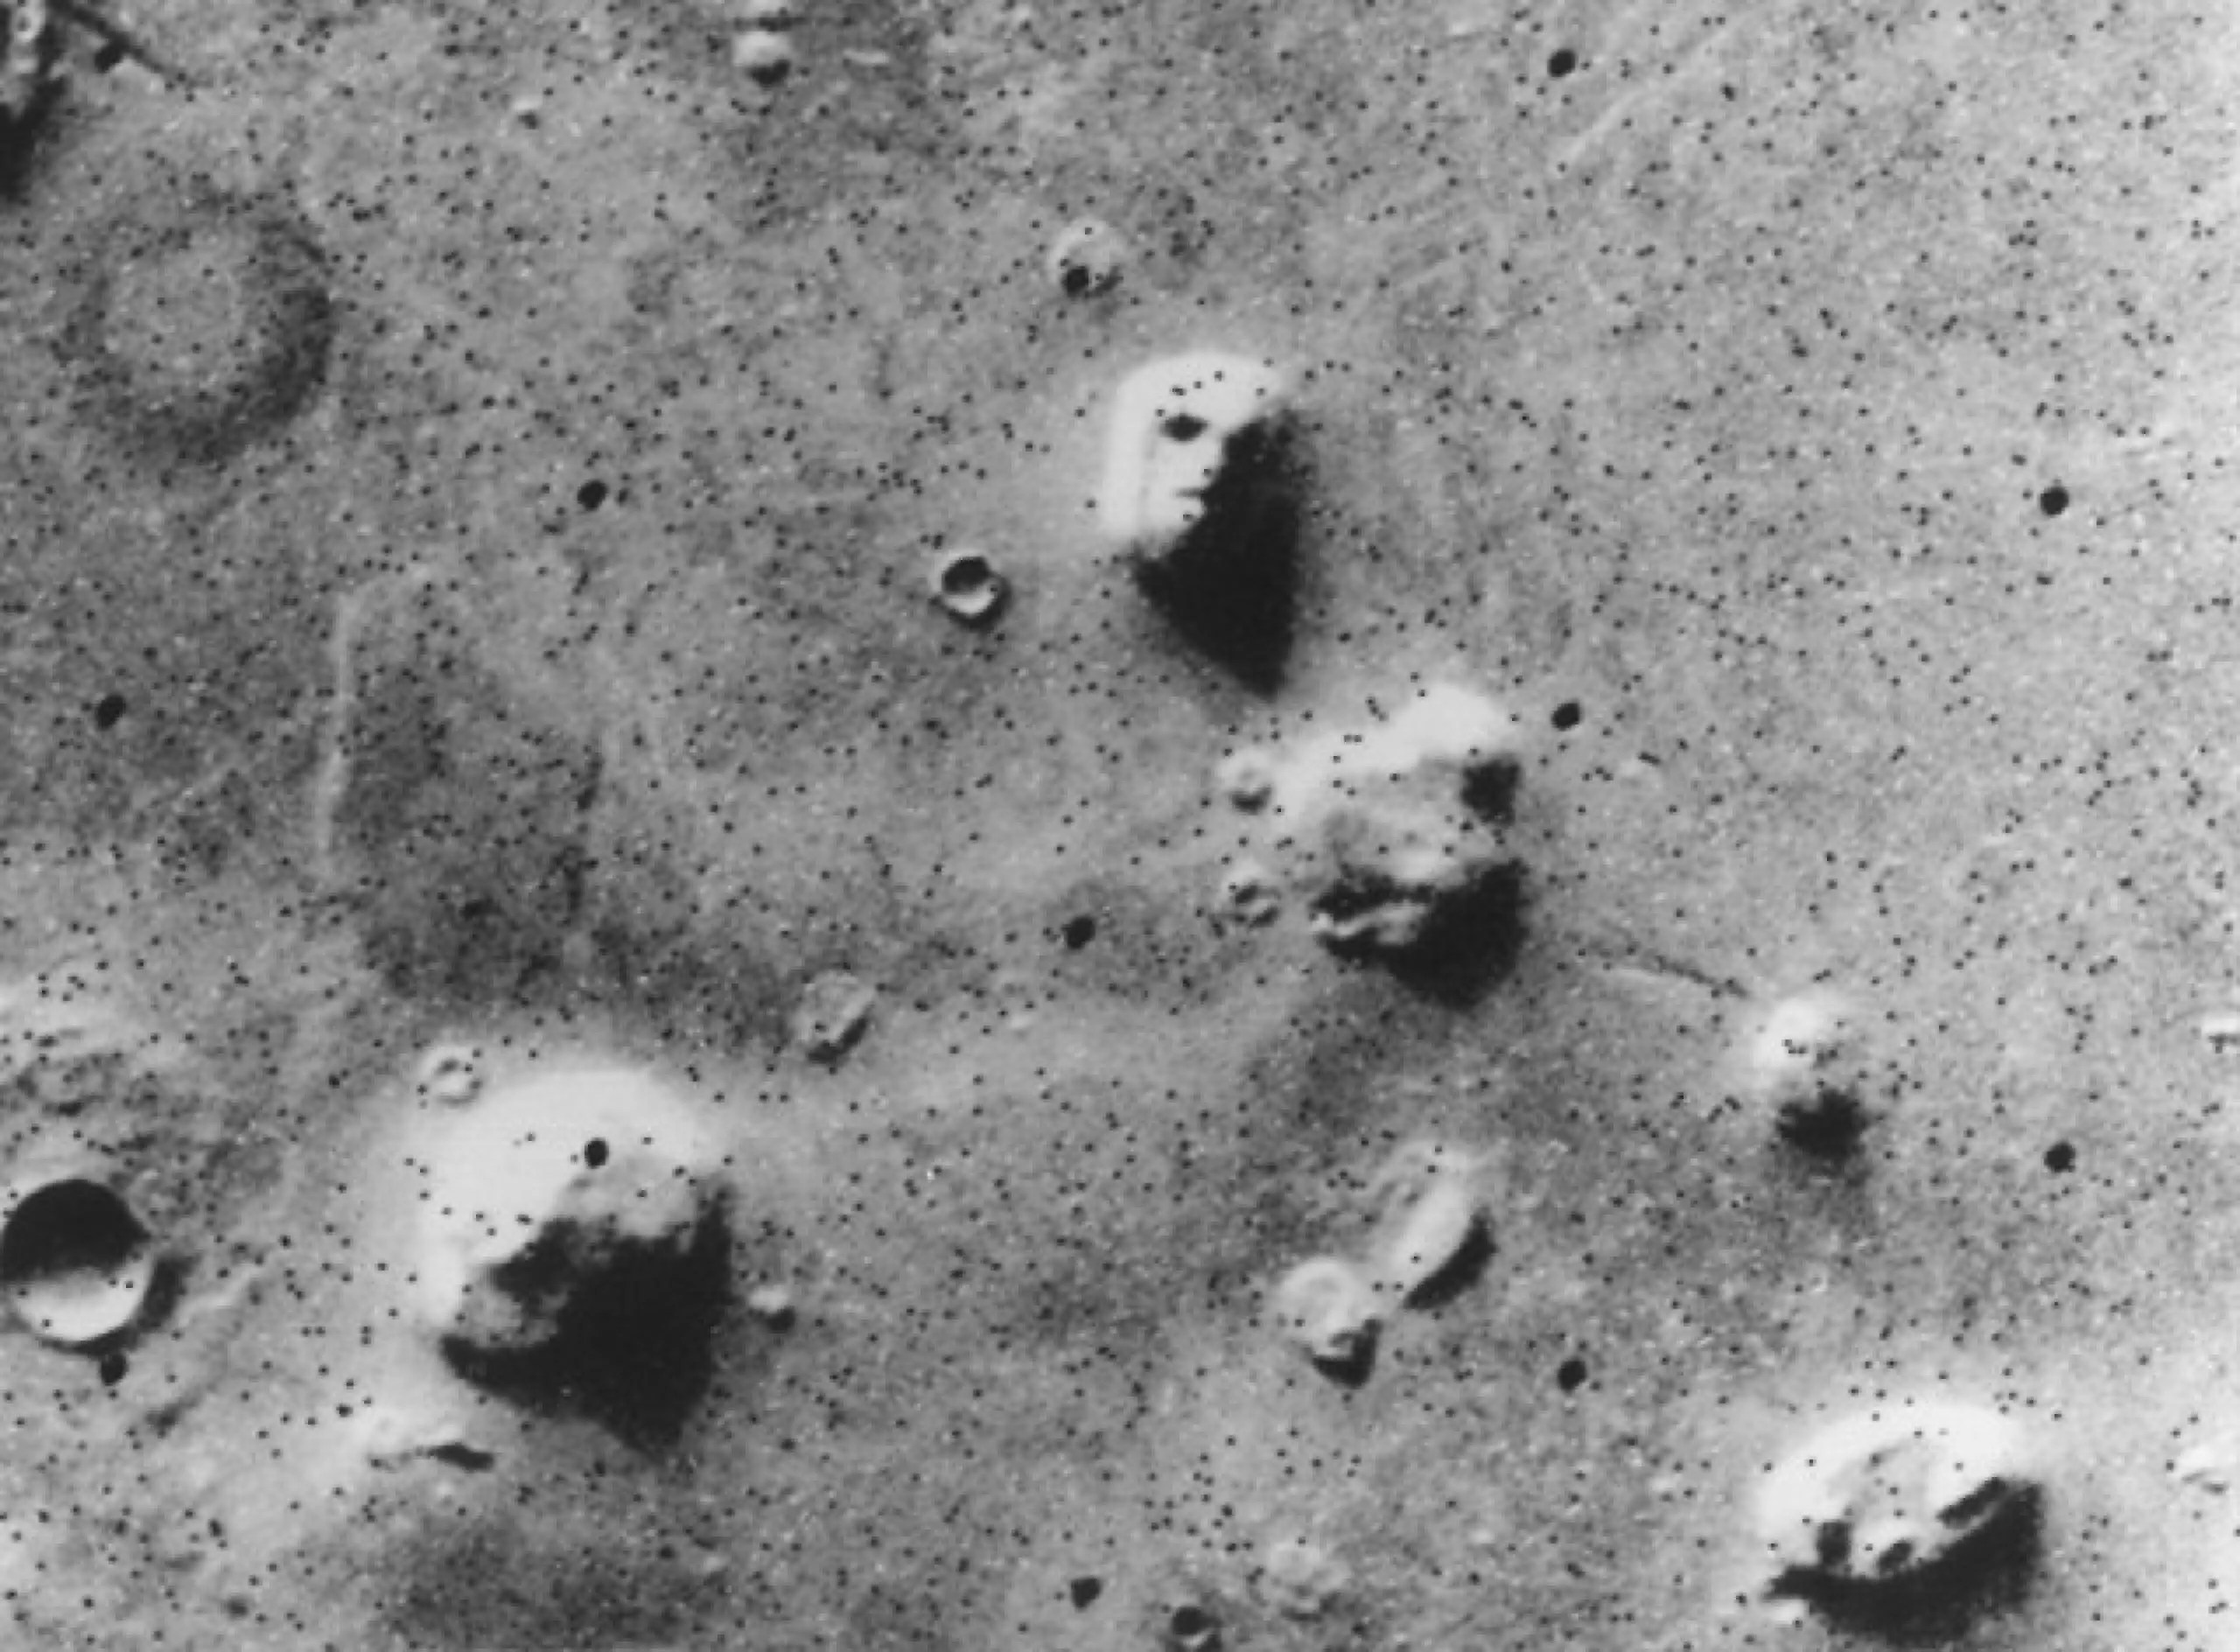 Imagen de 1976 tomada por la misión Viking en Marte, en la que algunas personas creían ver una cara. Créditos: NASA/JPL-Caltech